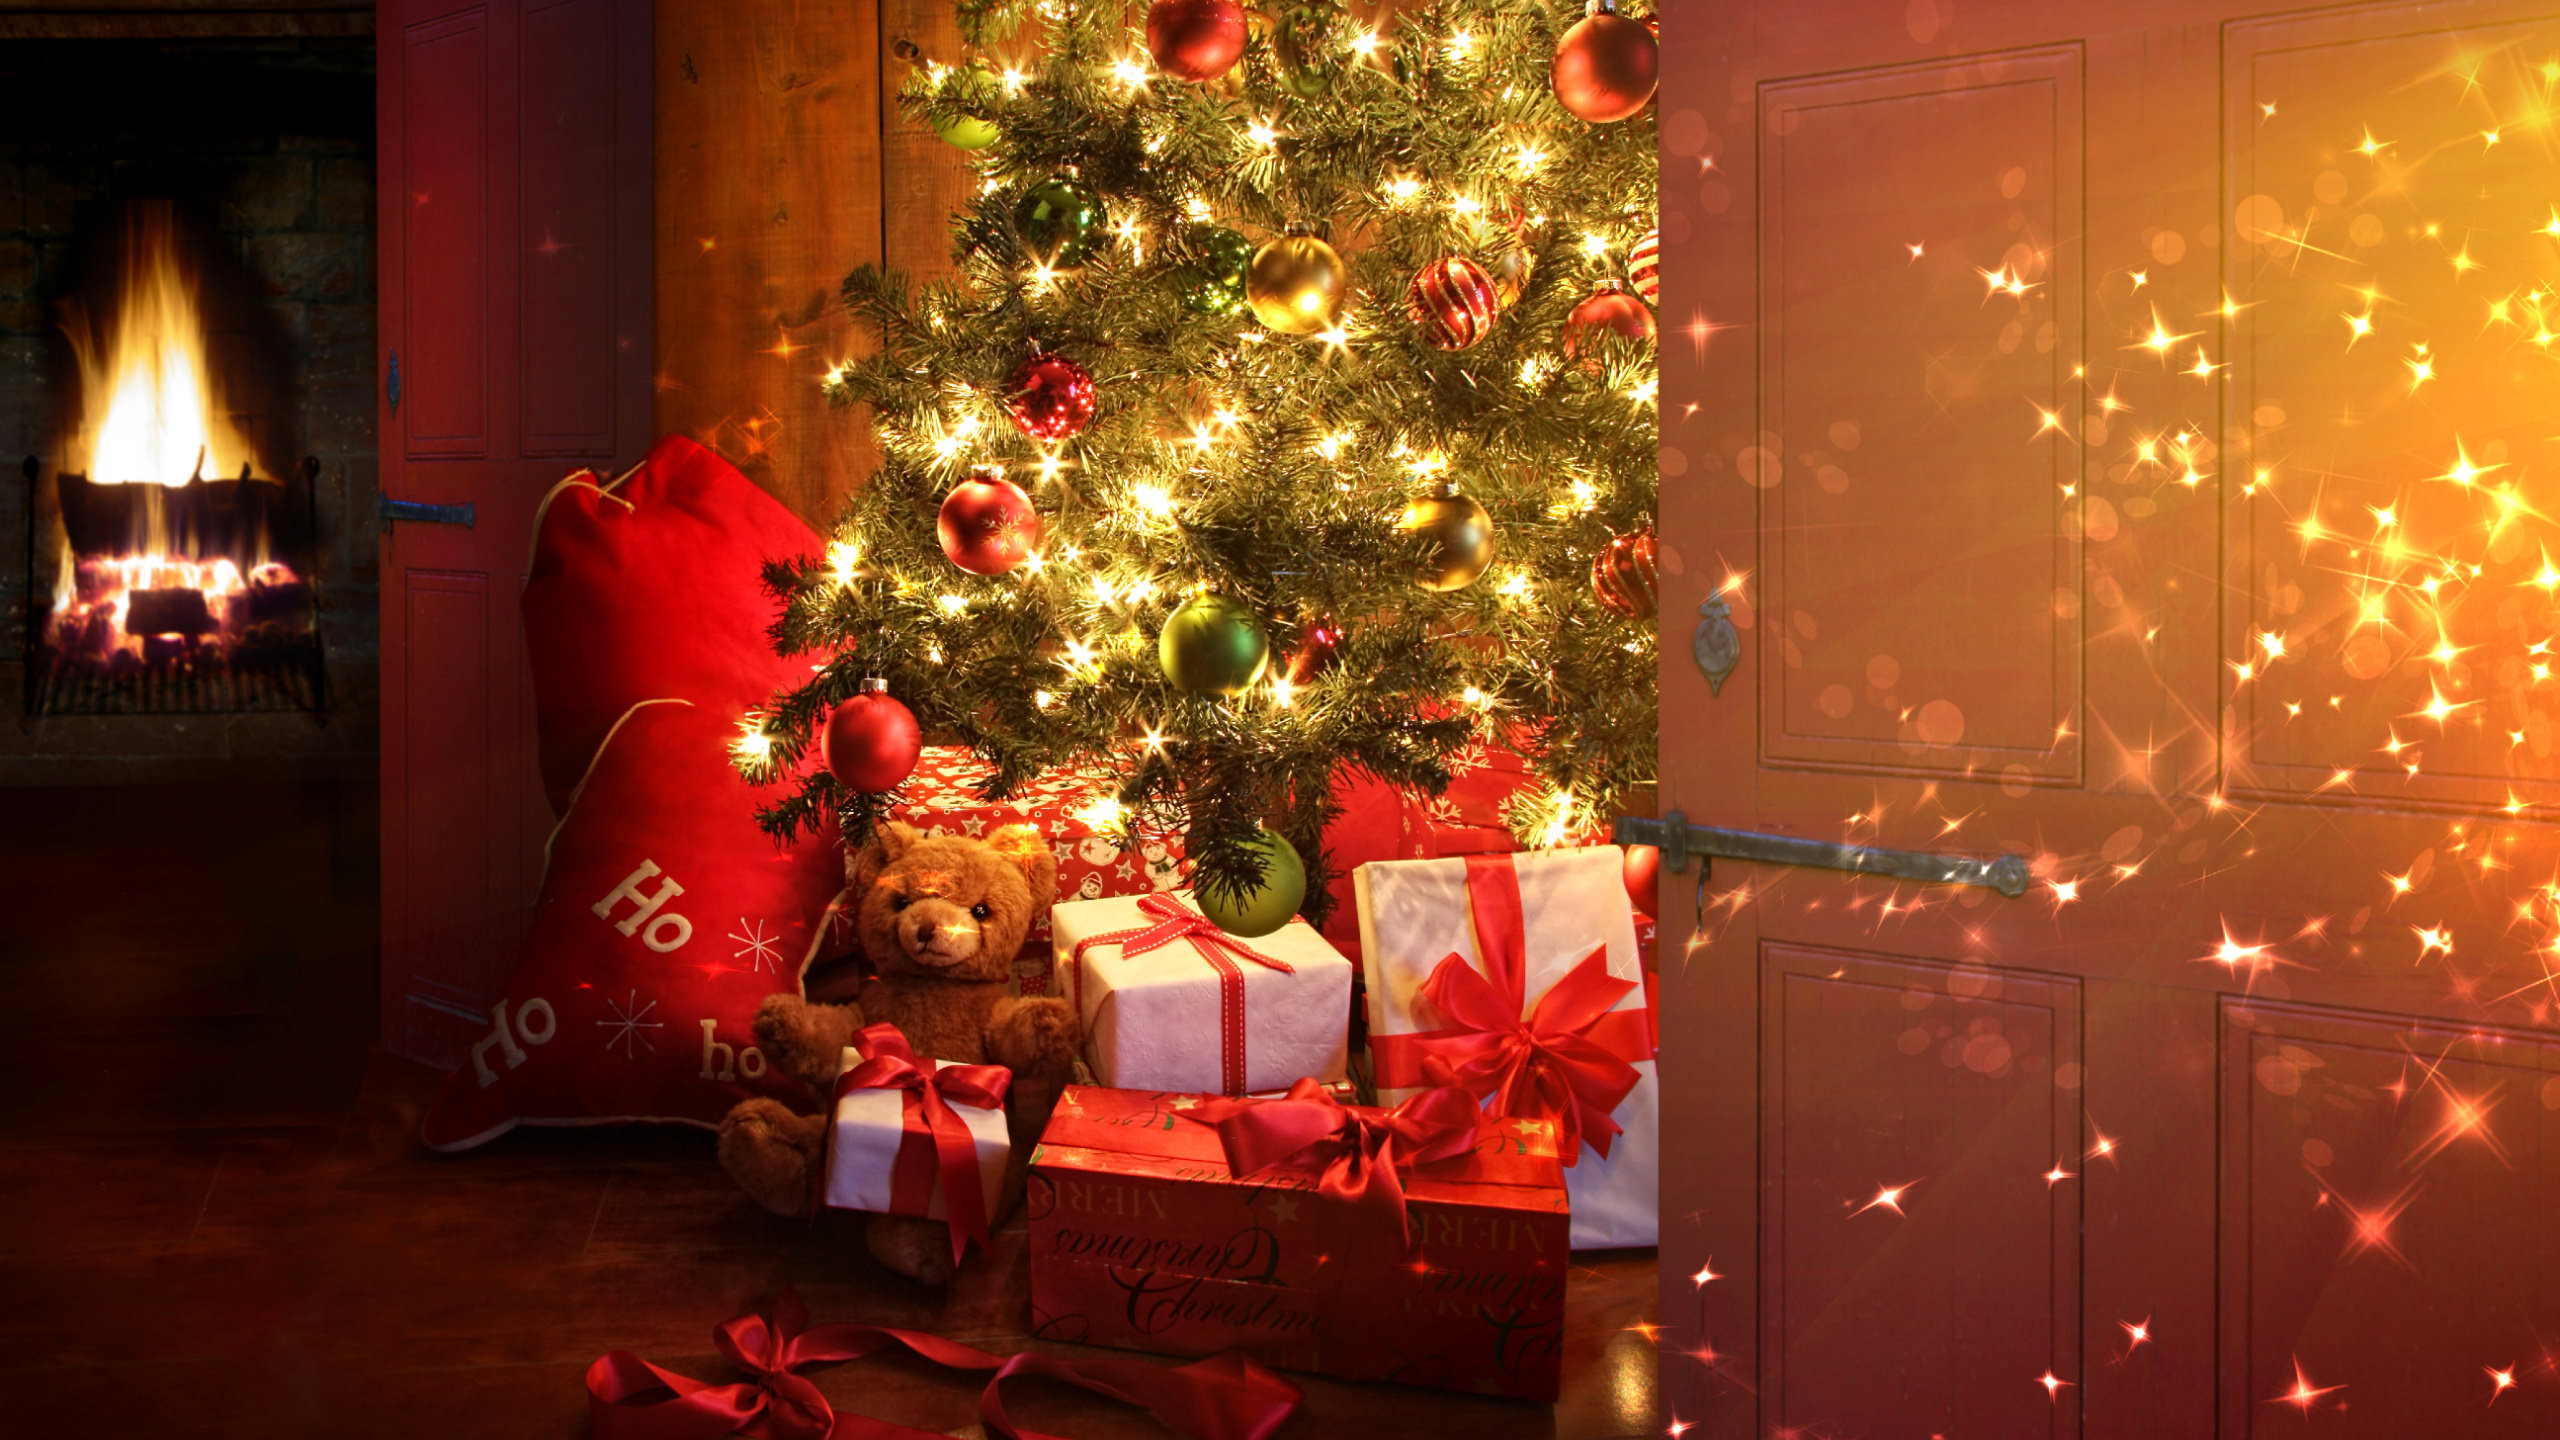 El Día De Navidad, Navidad, Decoración de la Navidad, Adorno de Navidad, Luces de Navidad. Wallpaper in 2560x1440 Resolution